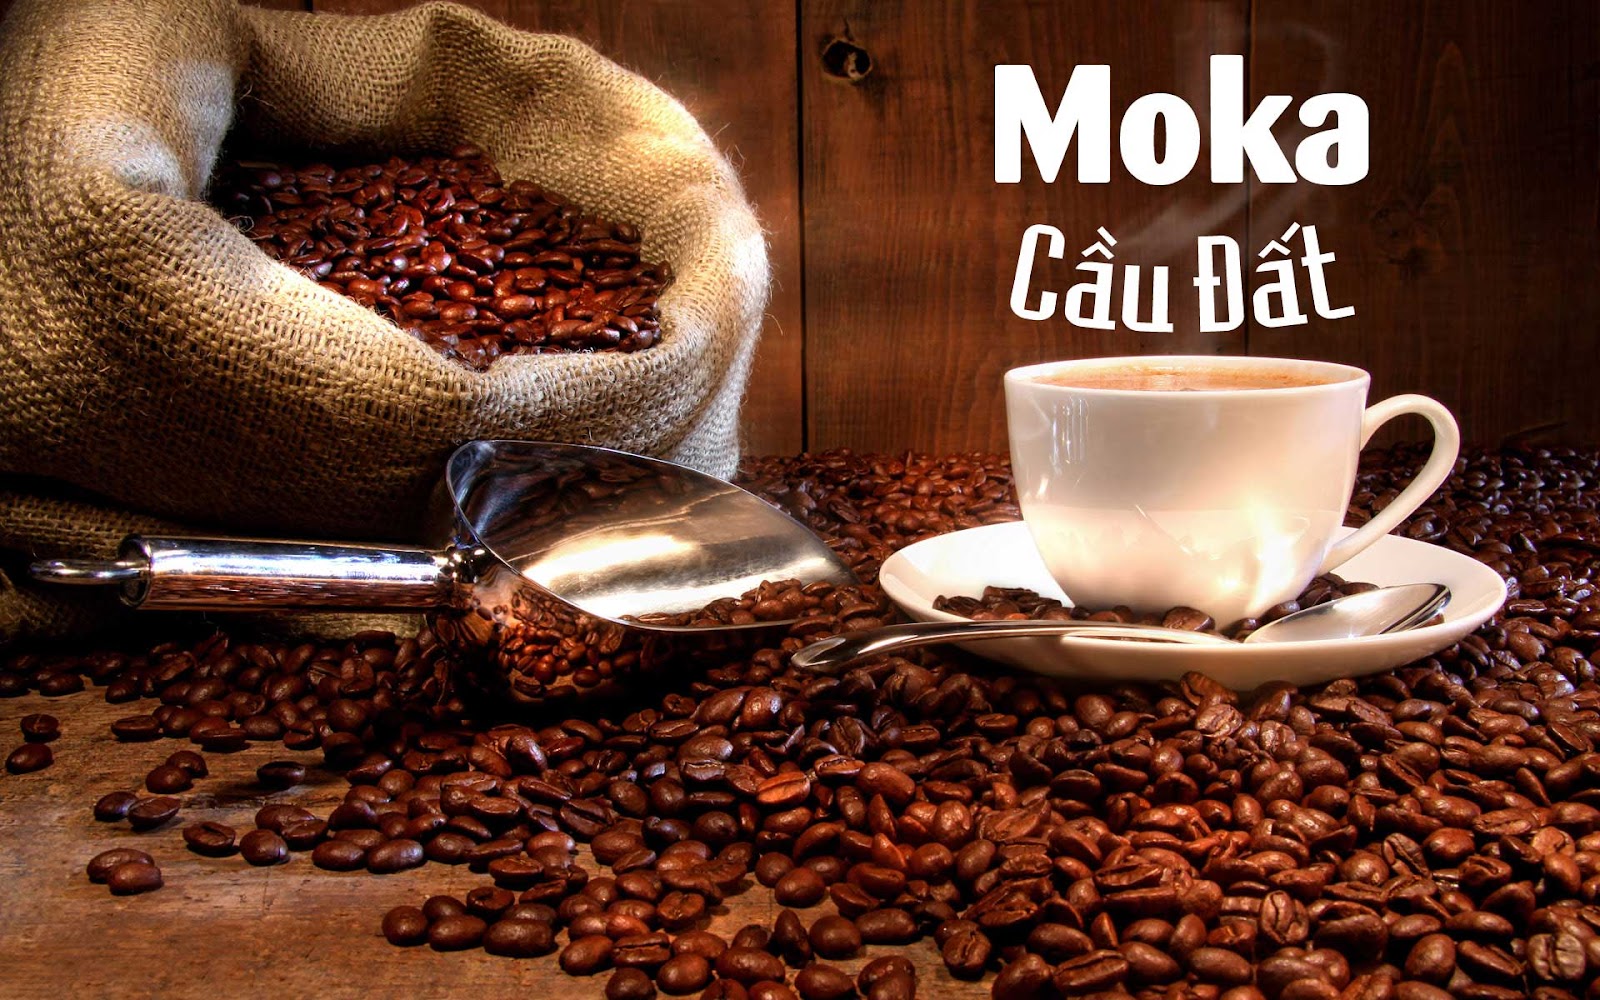 Cà phê rang xay Moka Cầu Đất - đặc sản Đà Lạt làm quà chất lượng tuyệt hảo.